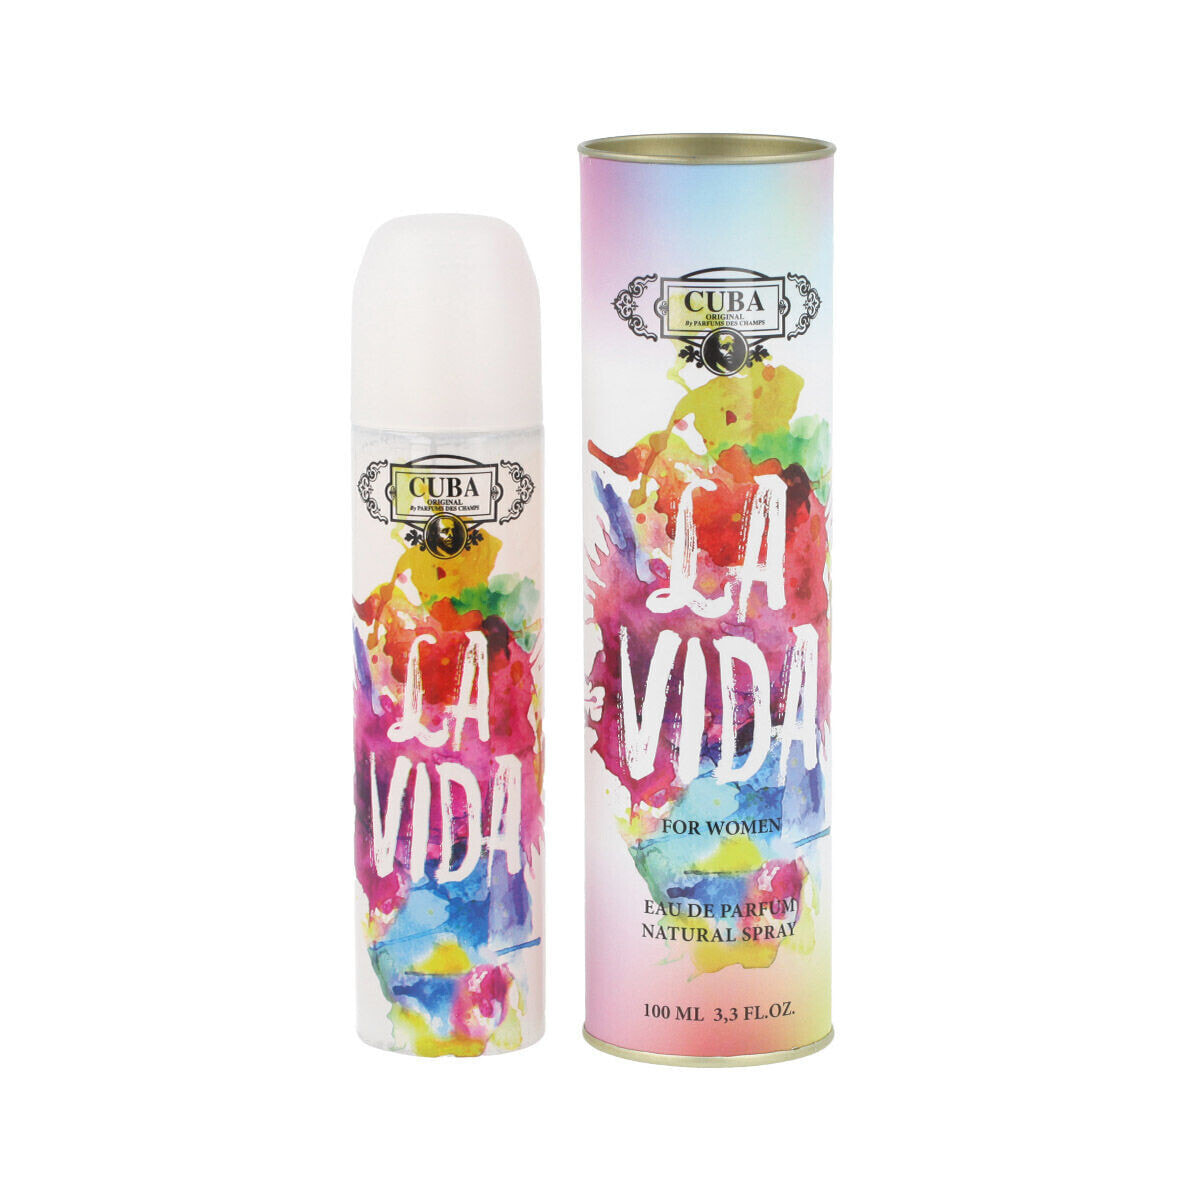 Женская парфюмерия Cuba La Vida 100 ml